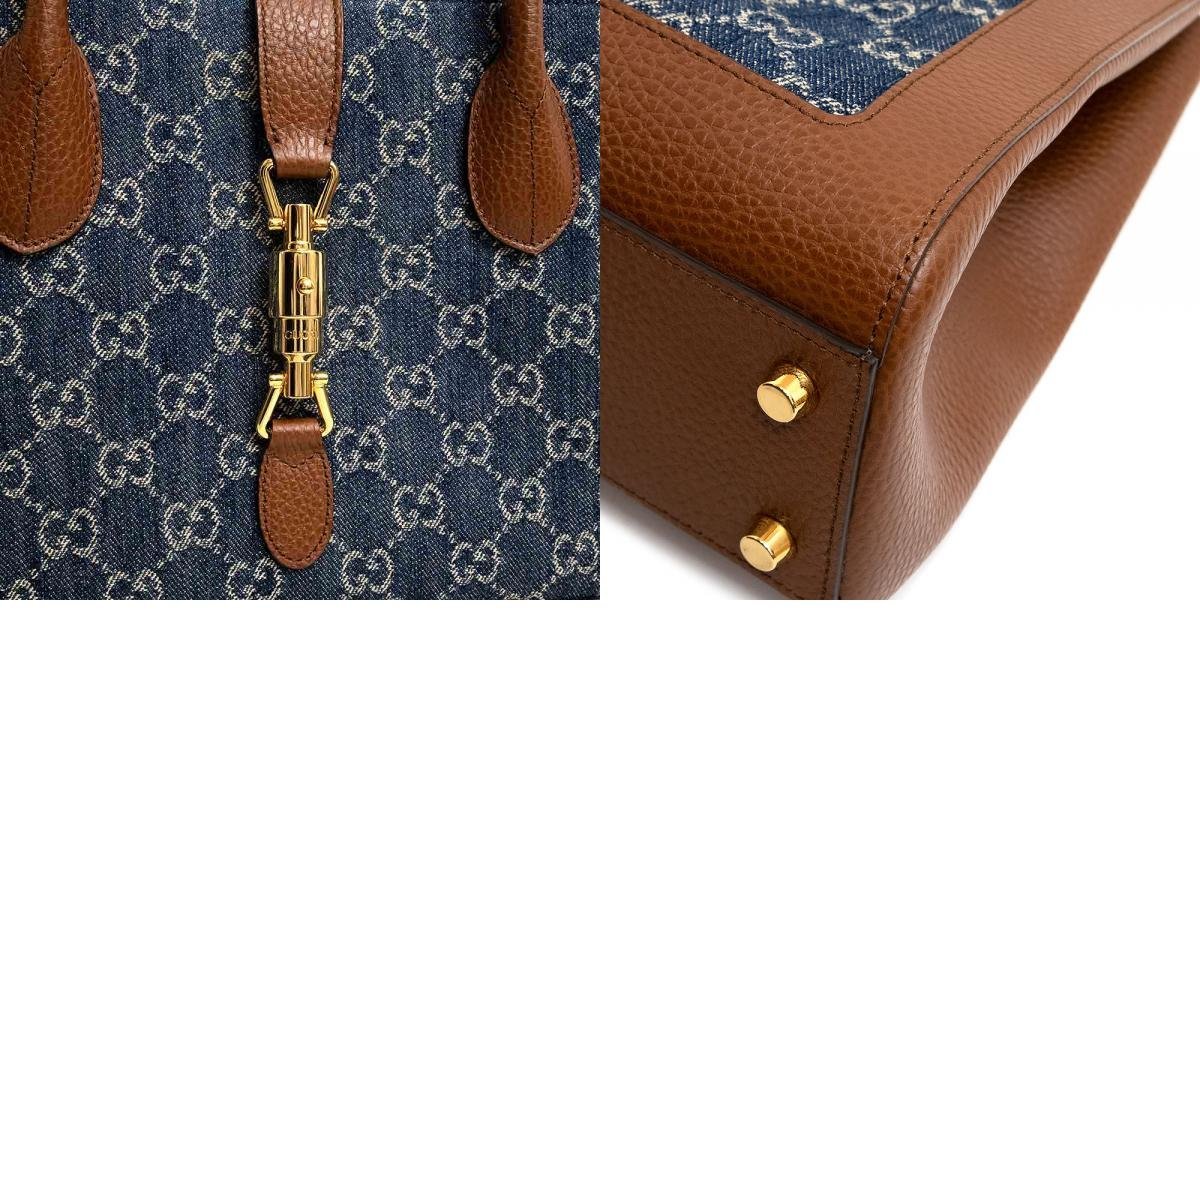 ( новый товар * не использовался товар ) Gucci GUCCI домкрат -1961 medium 2way большая сумка ручная сумочка кожа GGja карта Denim темно-голубой 649016